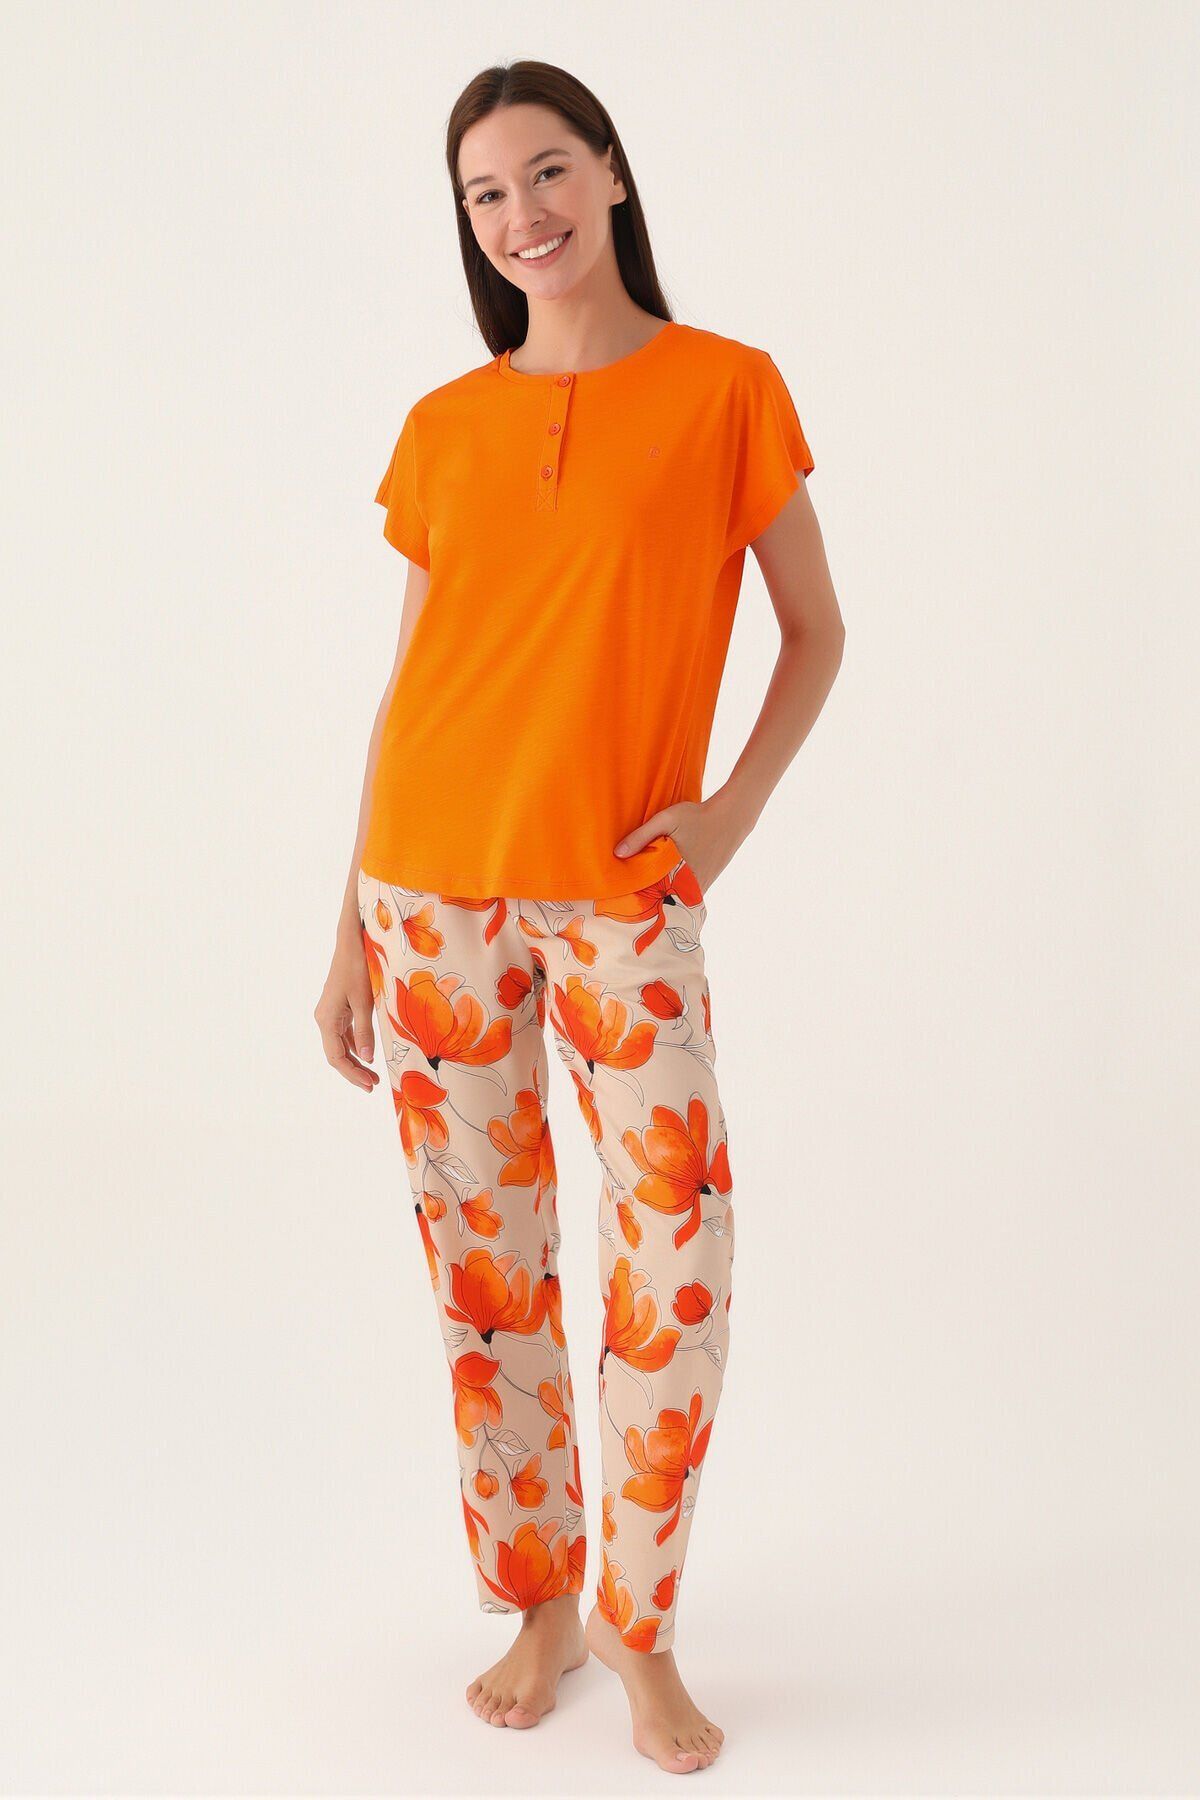 Pierre Cardin 8812 Orange Kadın Kısa Kol Pijama Takımı